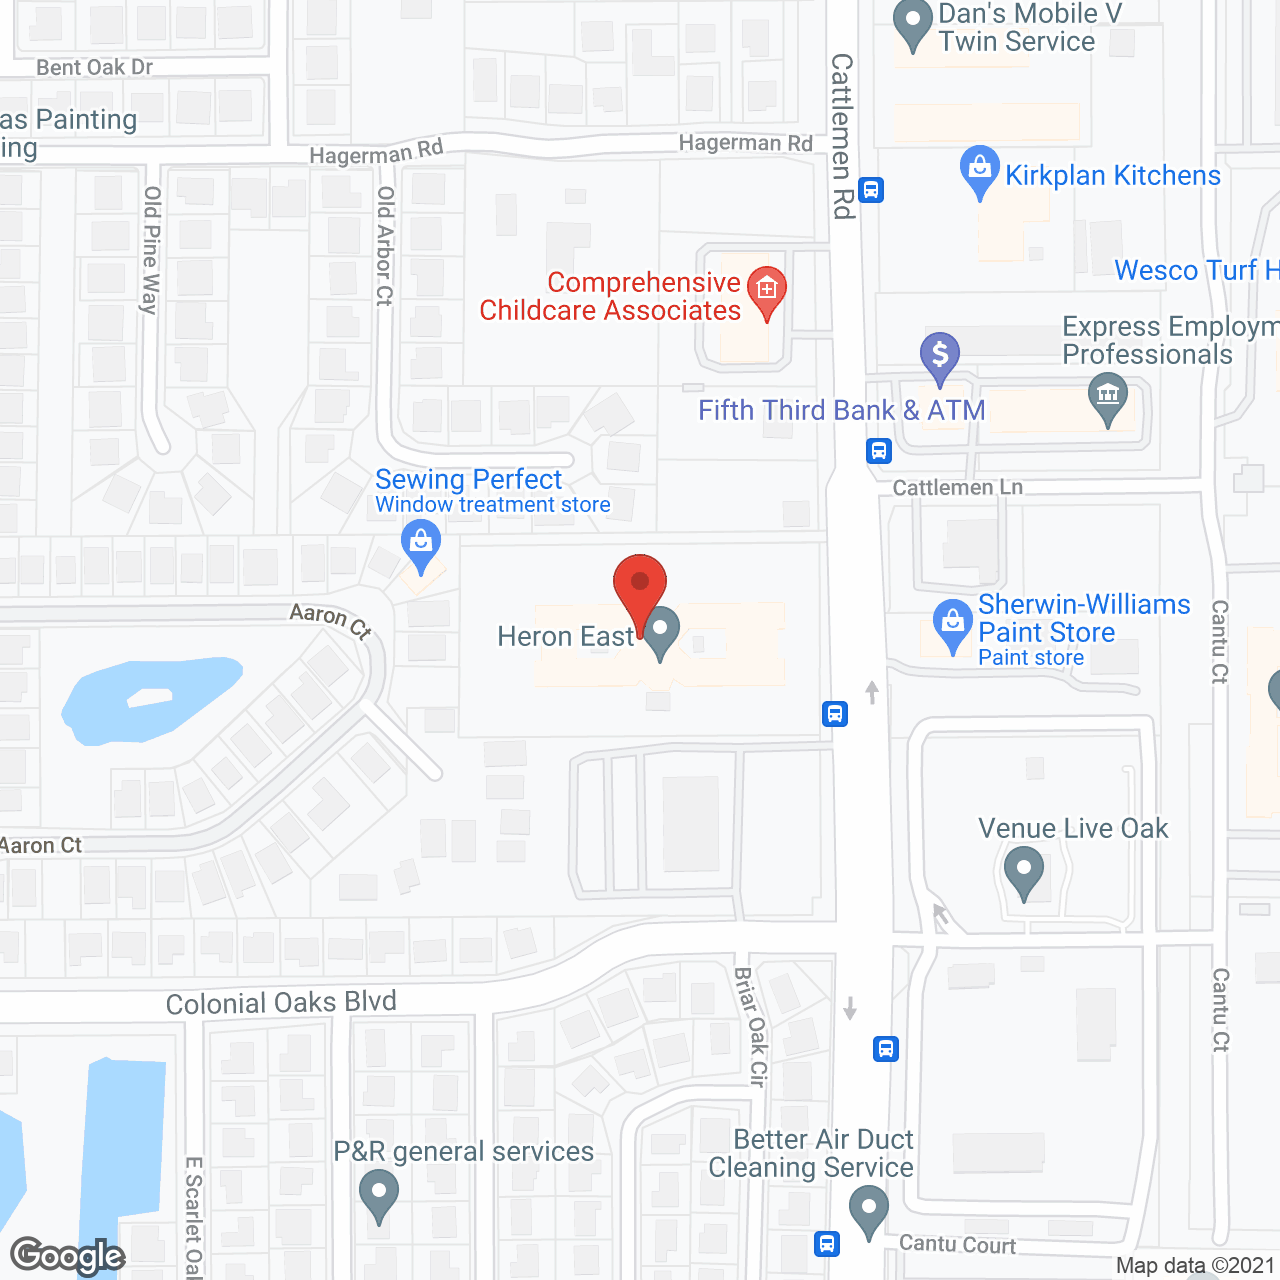 Heron East in google map